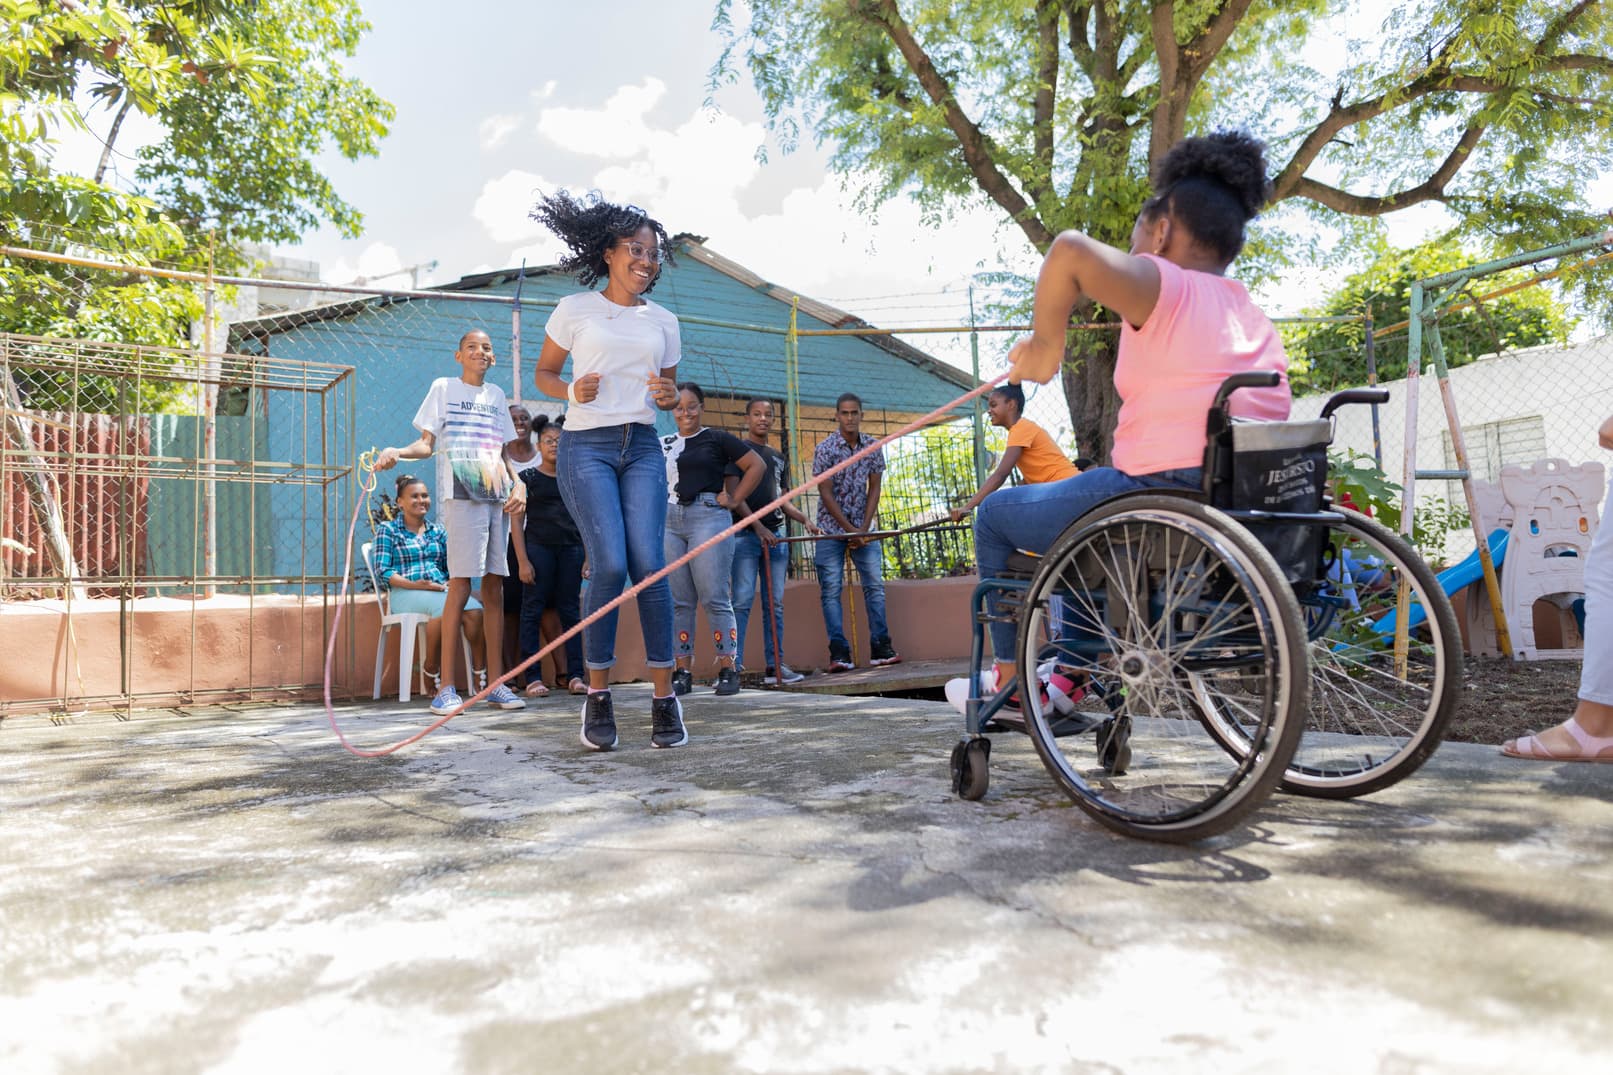 alt="Scarles Geschichte, Dominikanische Republik, ein Mädchen im Rollstuhl mit ihren Freundinnen am spielen im Garten, Compassion Deutschland"